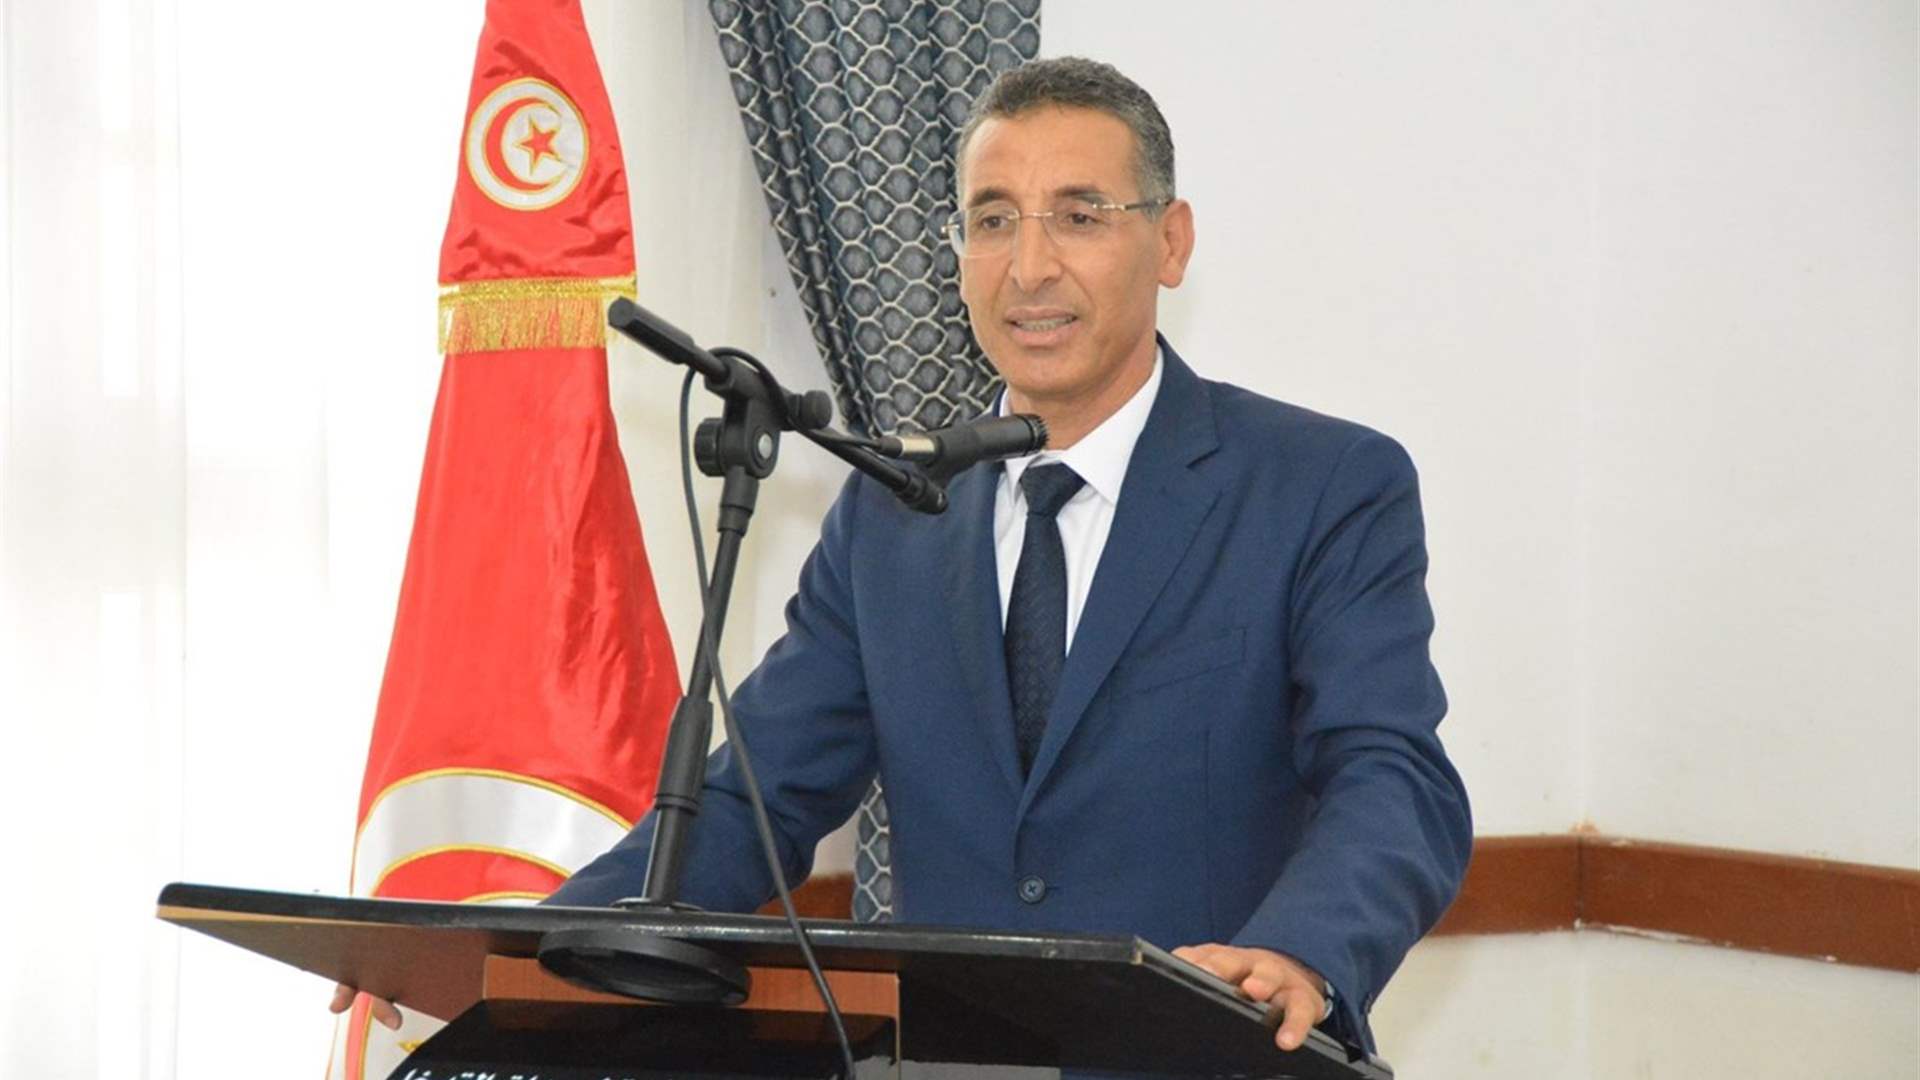 وزير الداخلية التونسي النافذ توفيق شرف الدين يعلن استقالته من منصبه